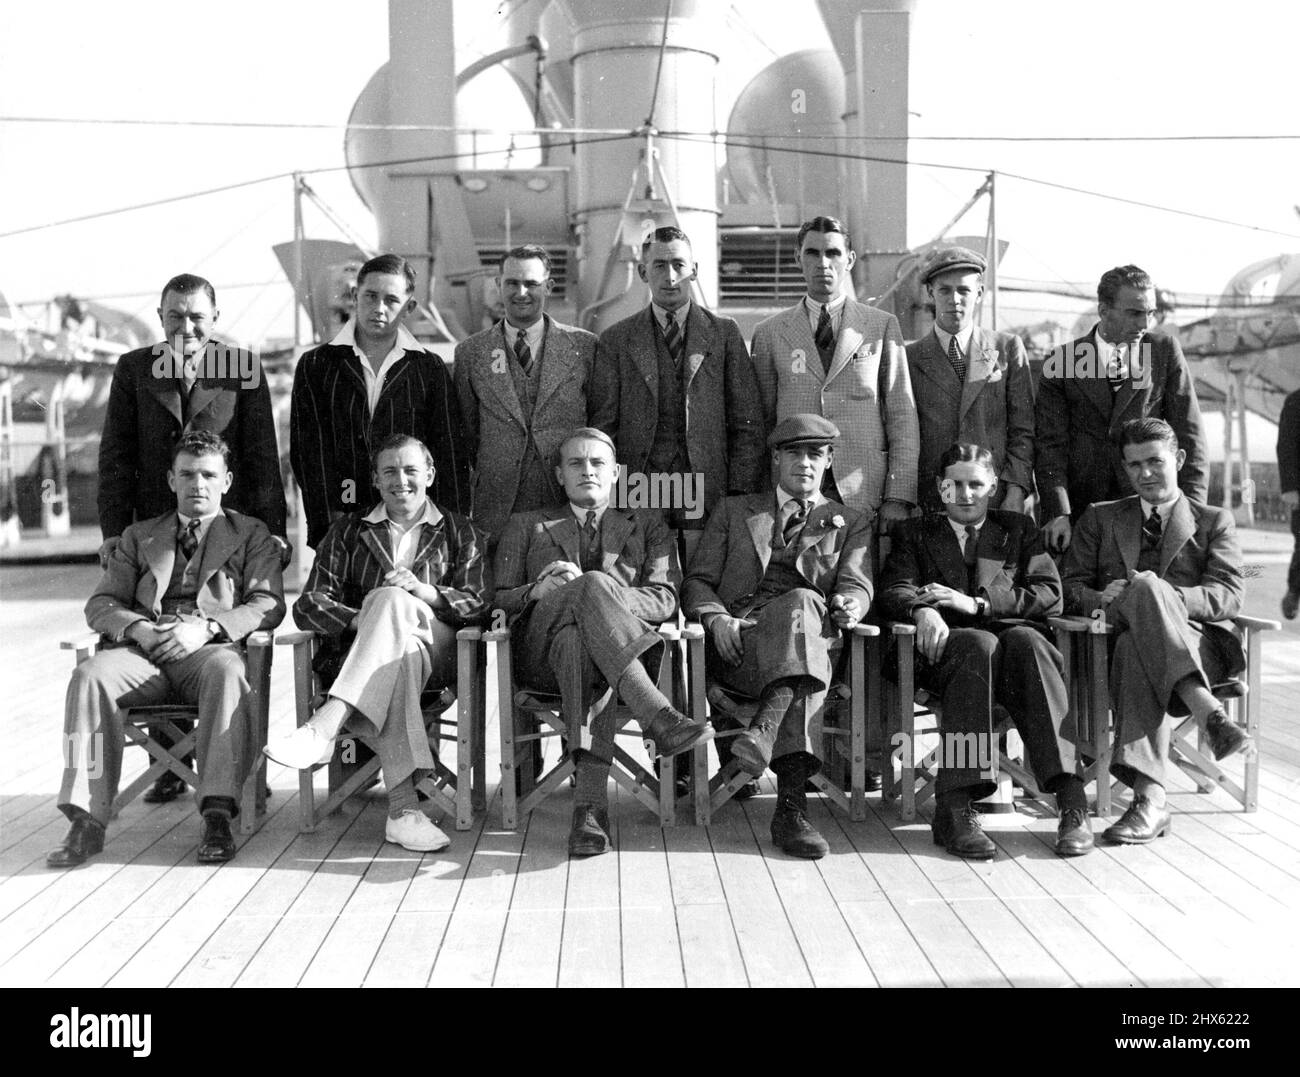 De gauche à droite : J.H. Parks, S.C. Griffith, Jas Langridge, D. Smith, N.-É Mitchell Innes; I. Hardstaff. Rangée avant - de gauche à droite : W. Baker, J.H. Charles Lyttelton, E.R. Holmes (capitaine), H.D. Lisez, A.D. Baxter. 27 octobre 1935. (Photo de Charles E. Brown).;Retour de gauche à droite: J.H. Parks, S.C. Griffith, Jas Langridge, D. Smith, N.-É Mitchell Innes; I. Hardstaff. Rangée avant - de gauche à droite : W. Baker, J.H. Charles Lyttelton, E.R. Holmes (capitaine), H.D. Lisez, A.D. Baxter. Banque D'Images